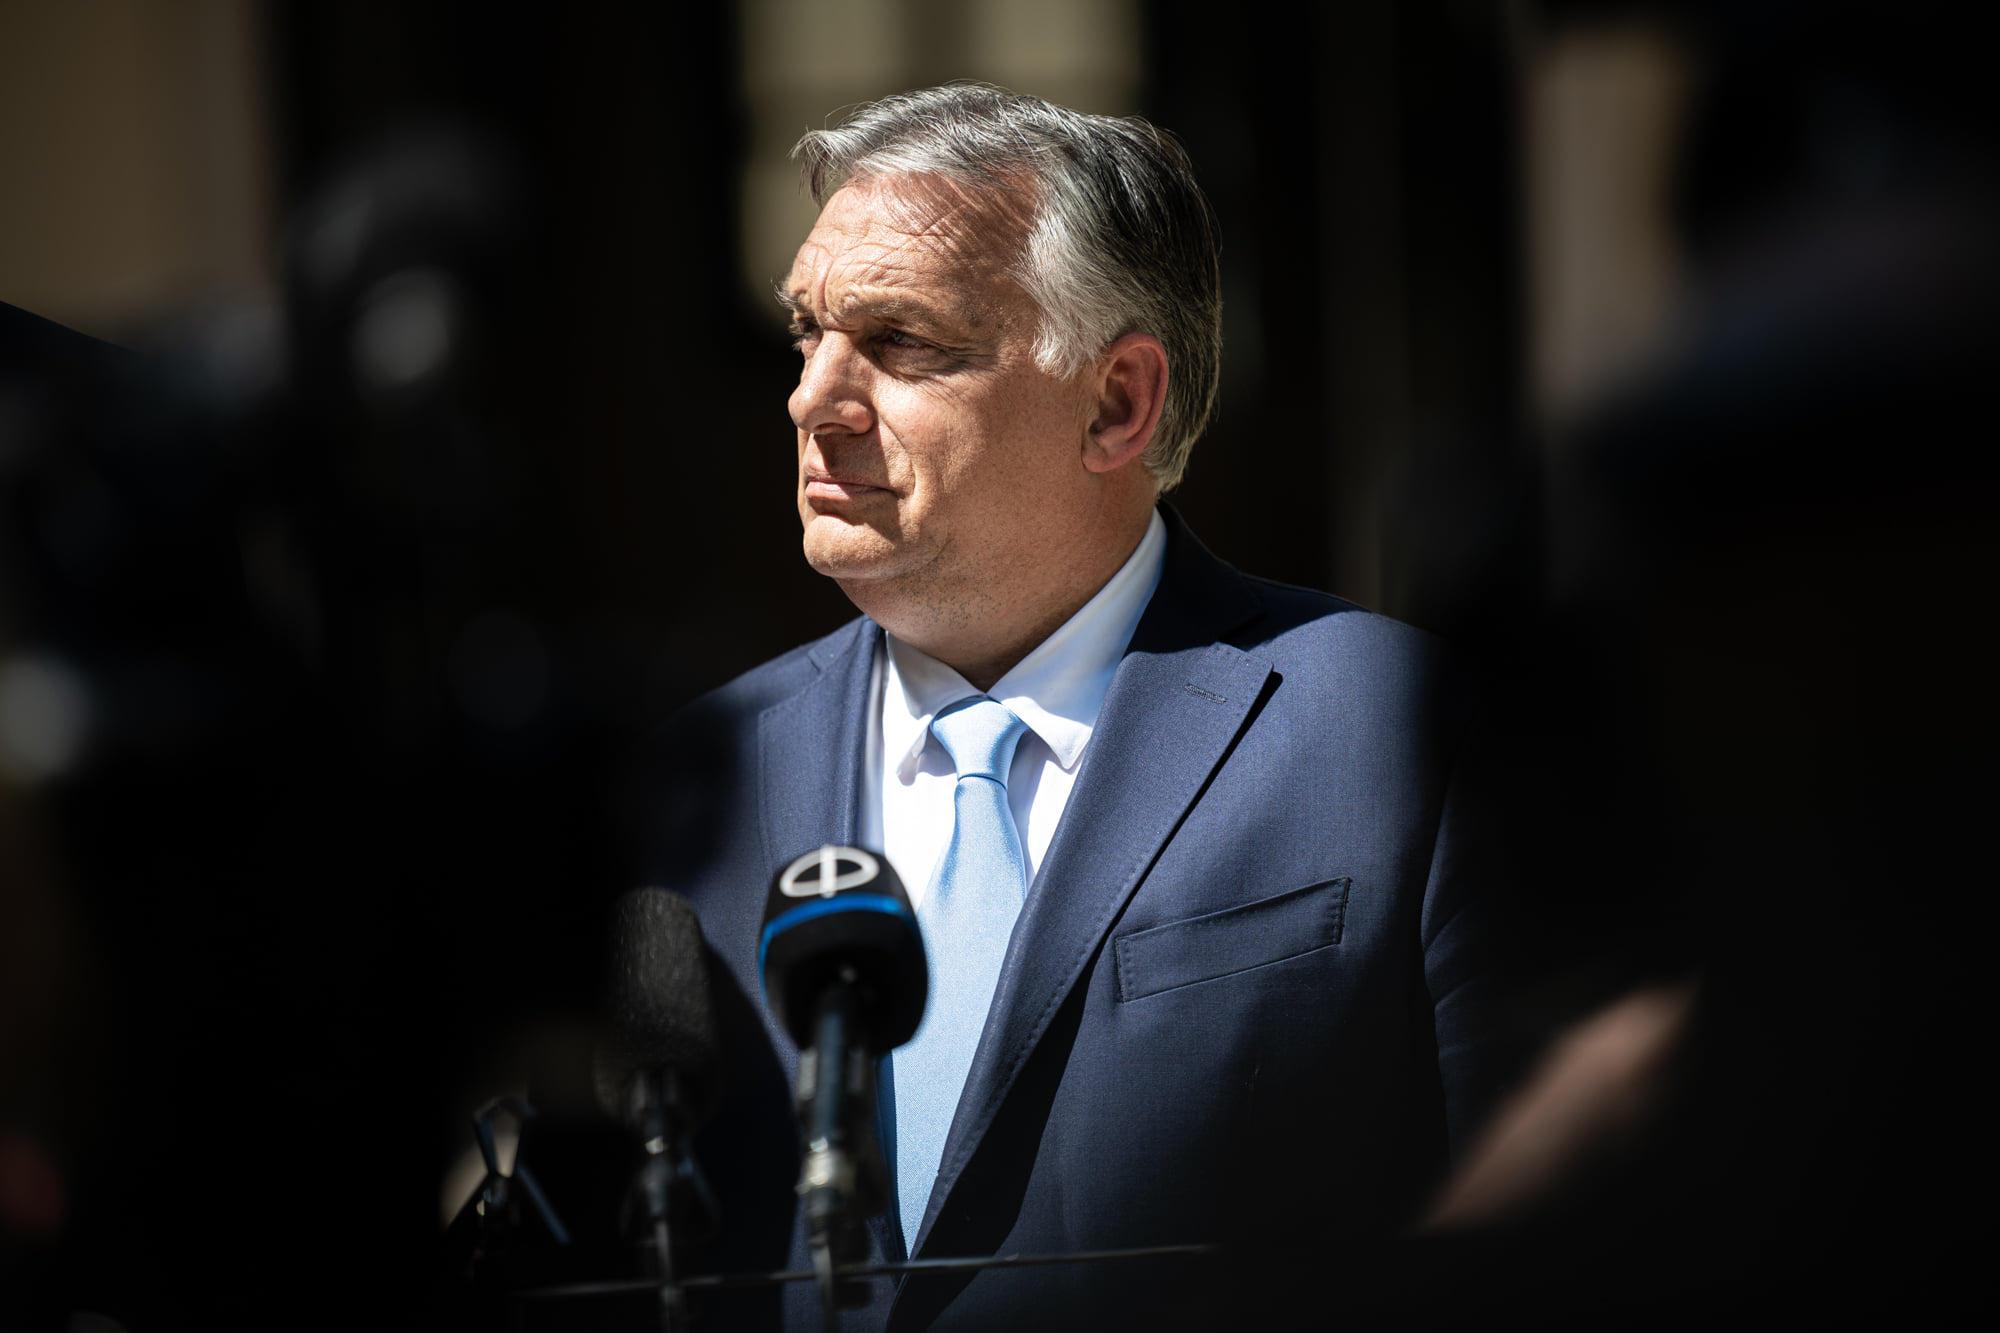 orbán in shadow